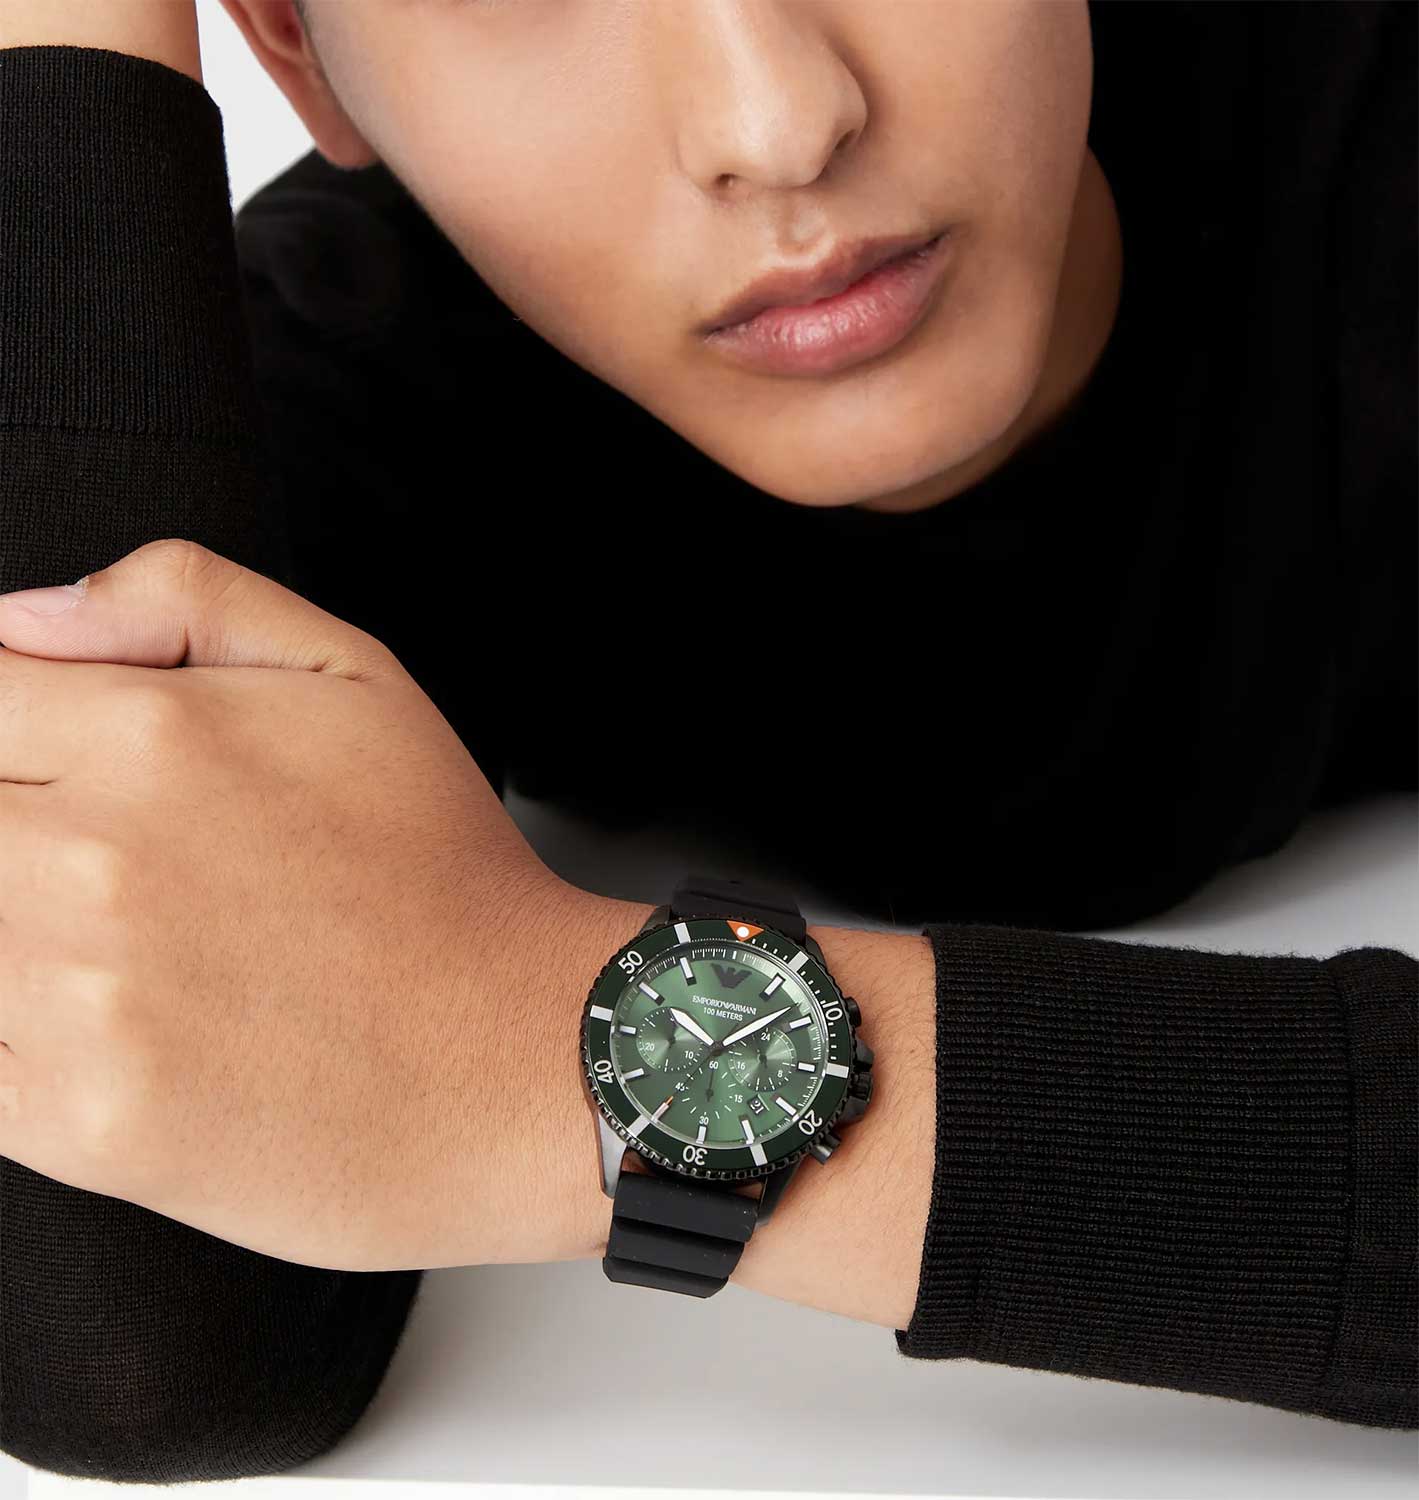 купить лучшей характеристики, фото, Emporio часы по Наручные AR11463 цене, Armani AllTime.ru интернет-магазине — инструкция, описание в